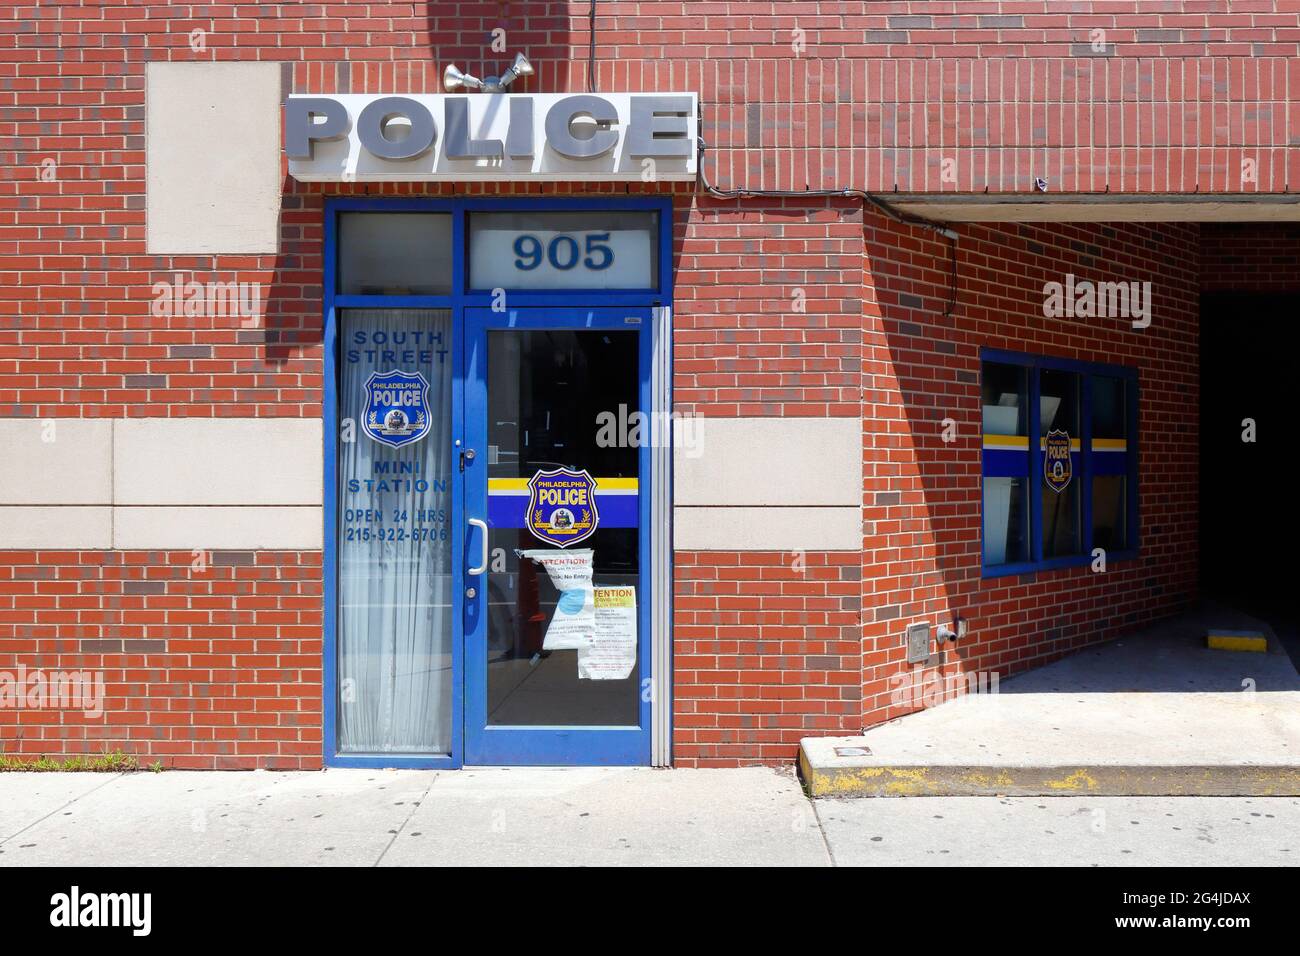 Philadelphia Police - South Street Mini Station, 905 South St, Philadelphia, PA. Fronte di un deposito esterno di una stazione di polizia. Foto Stock